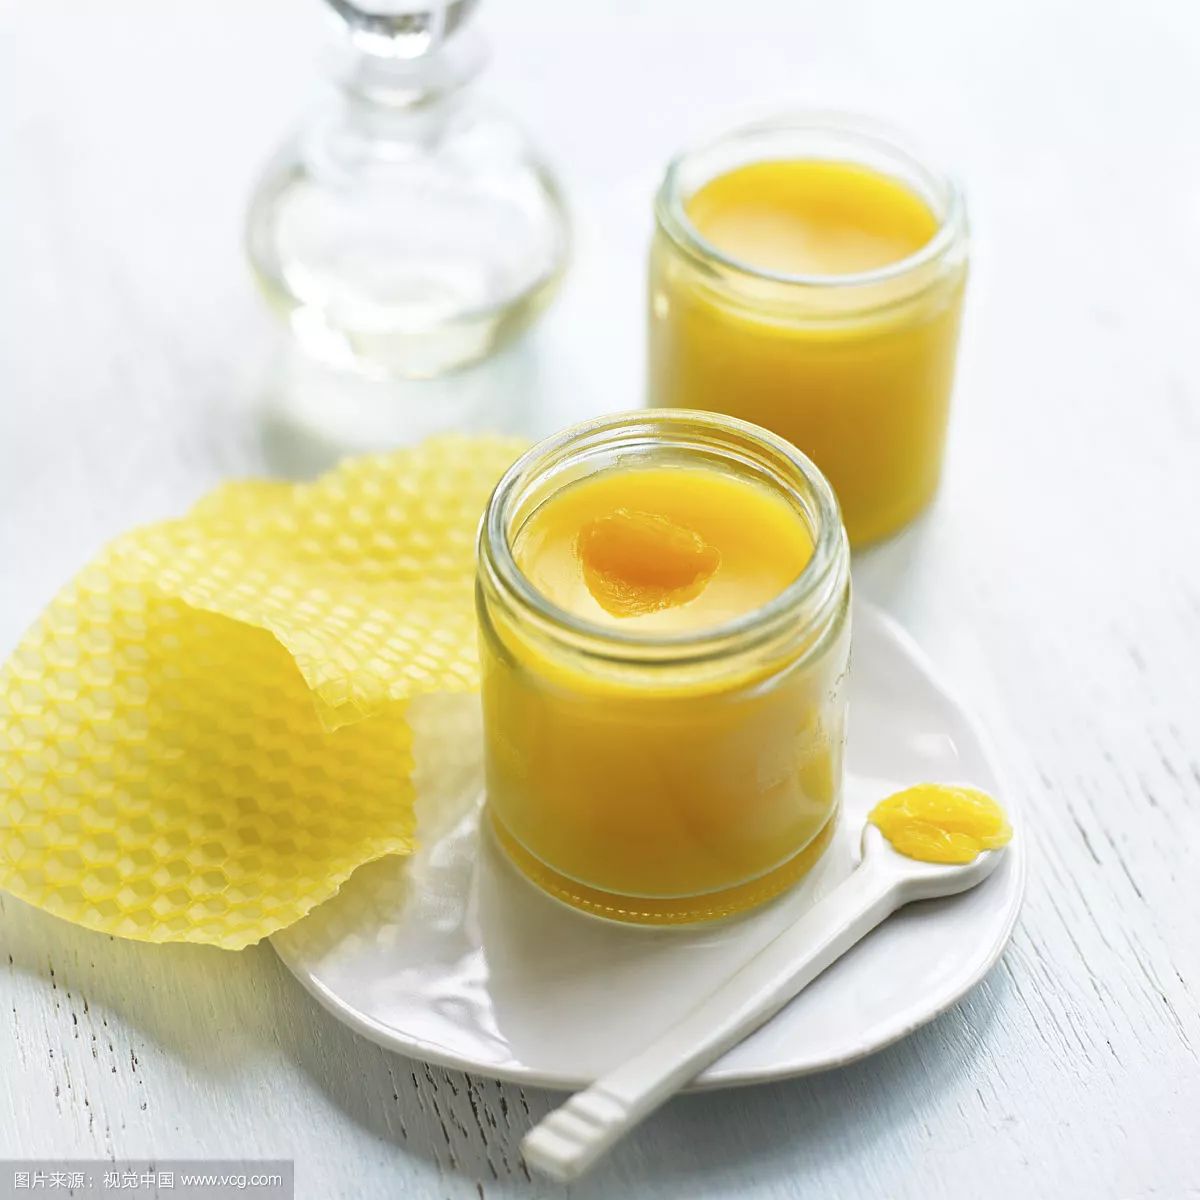 什么时候喝苹果醋加蜂蜜好 蜂蜜治疗什么 不透明的蜂蜜 依然牌蜂蜜 如何鉴定蜂蜜的真假